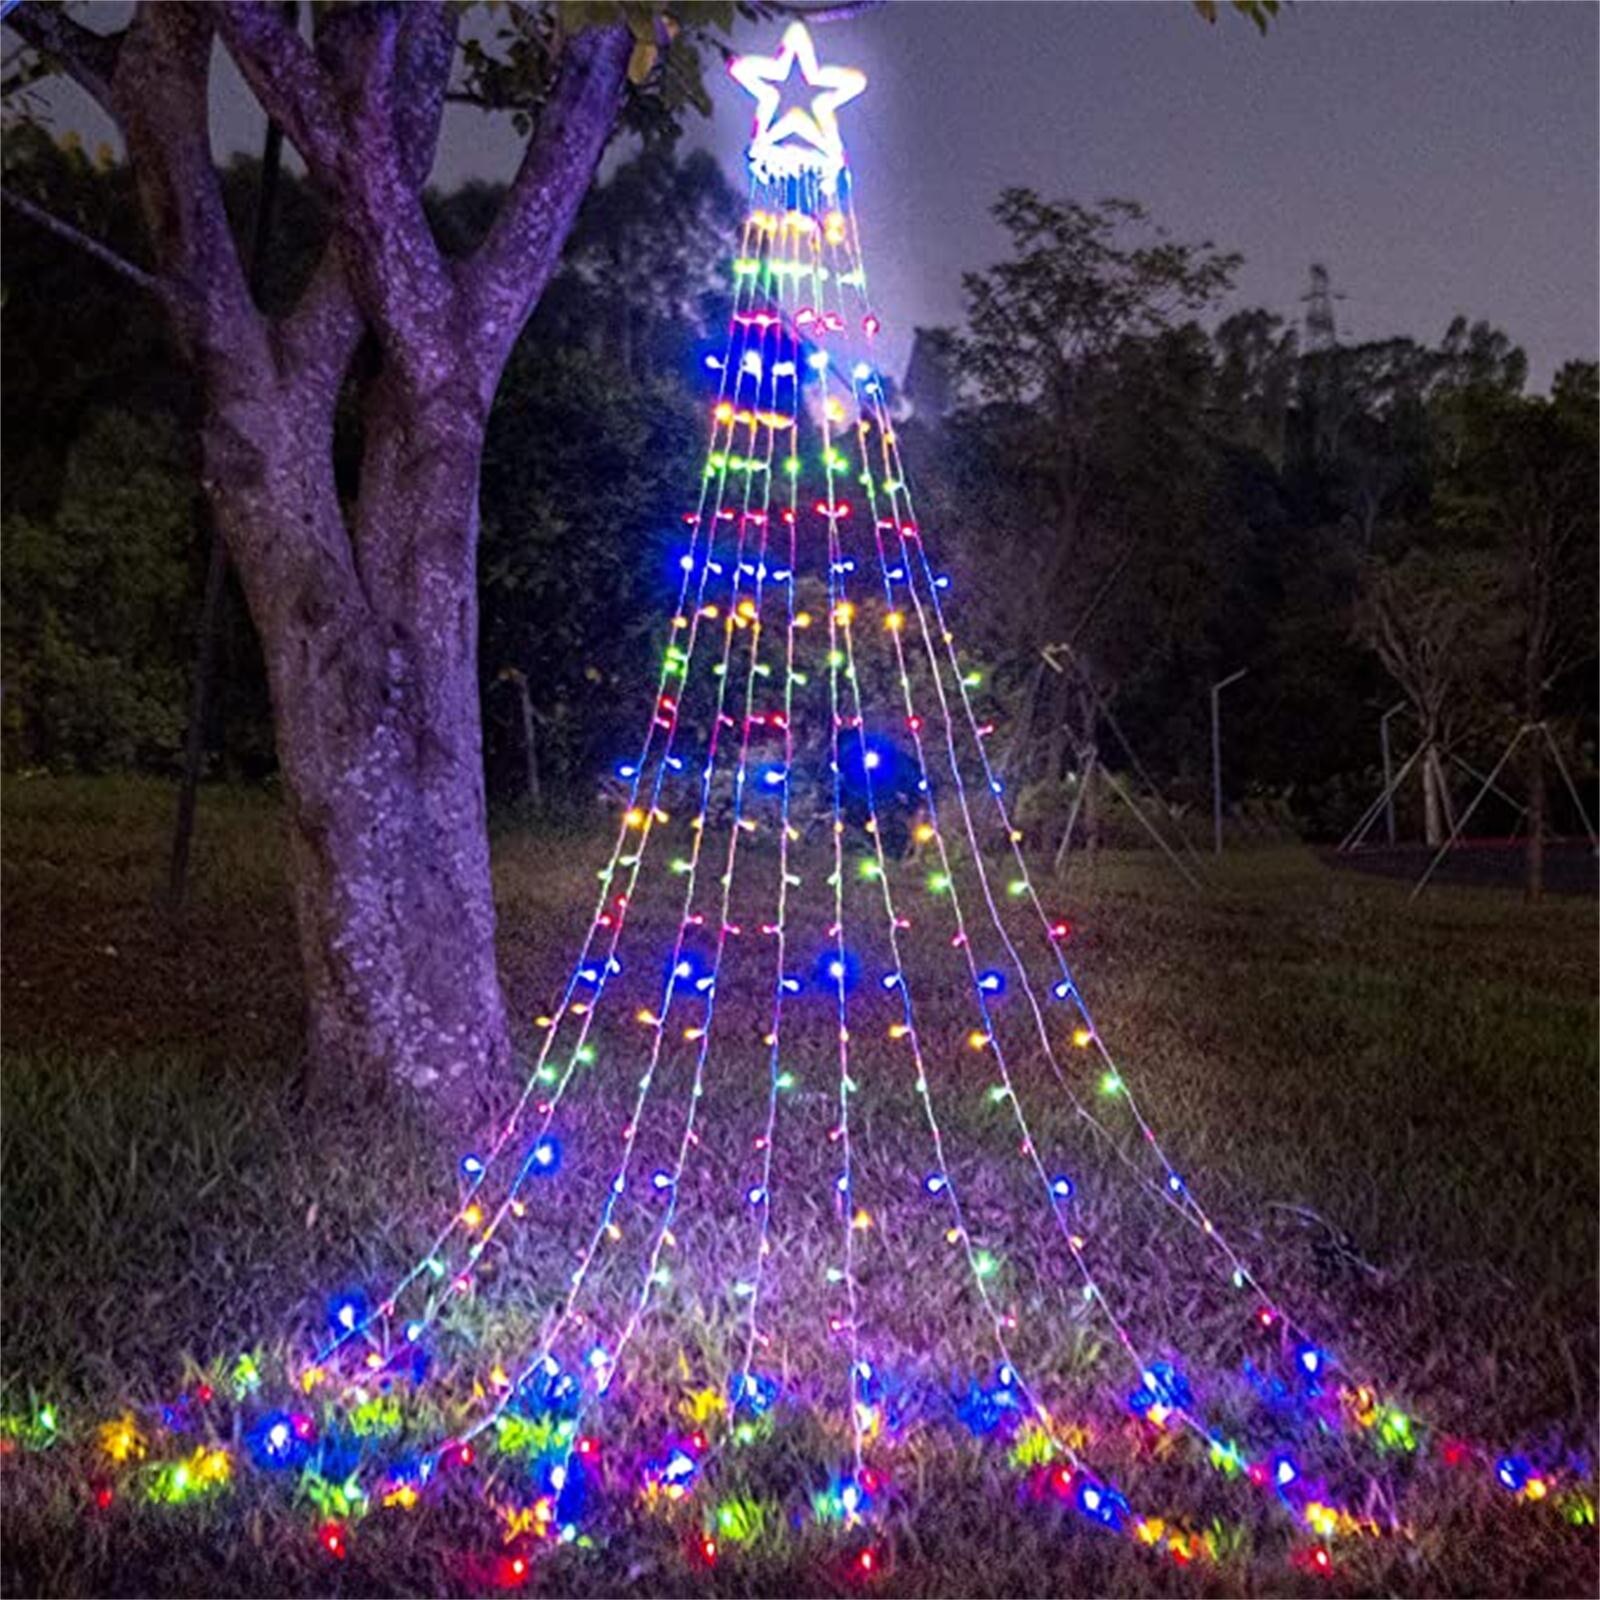 300 Led Boom Decoratie Ster Lichten 8 Verlichting Modes Waterdicht Voor Home Party Led String Lights Decoratie # C